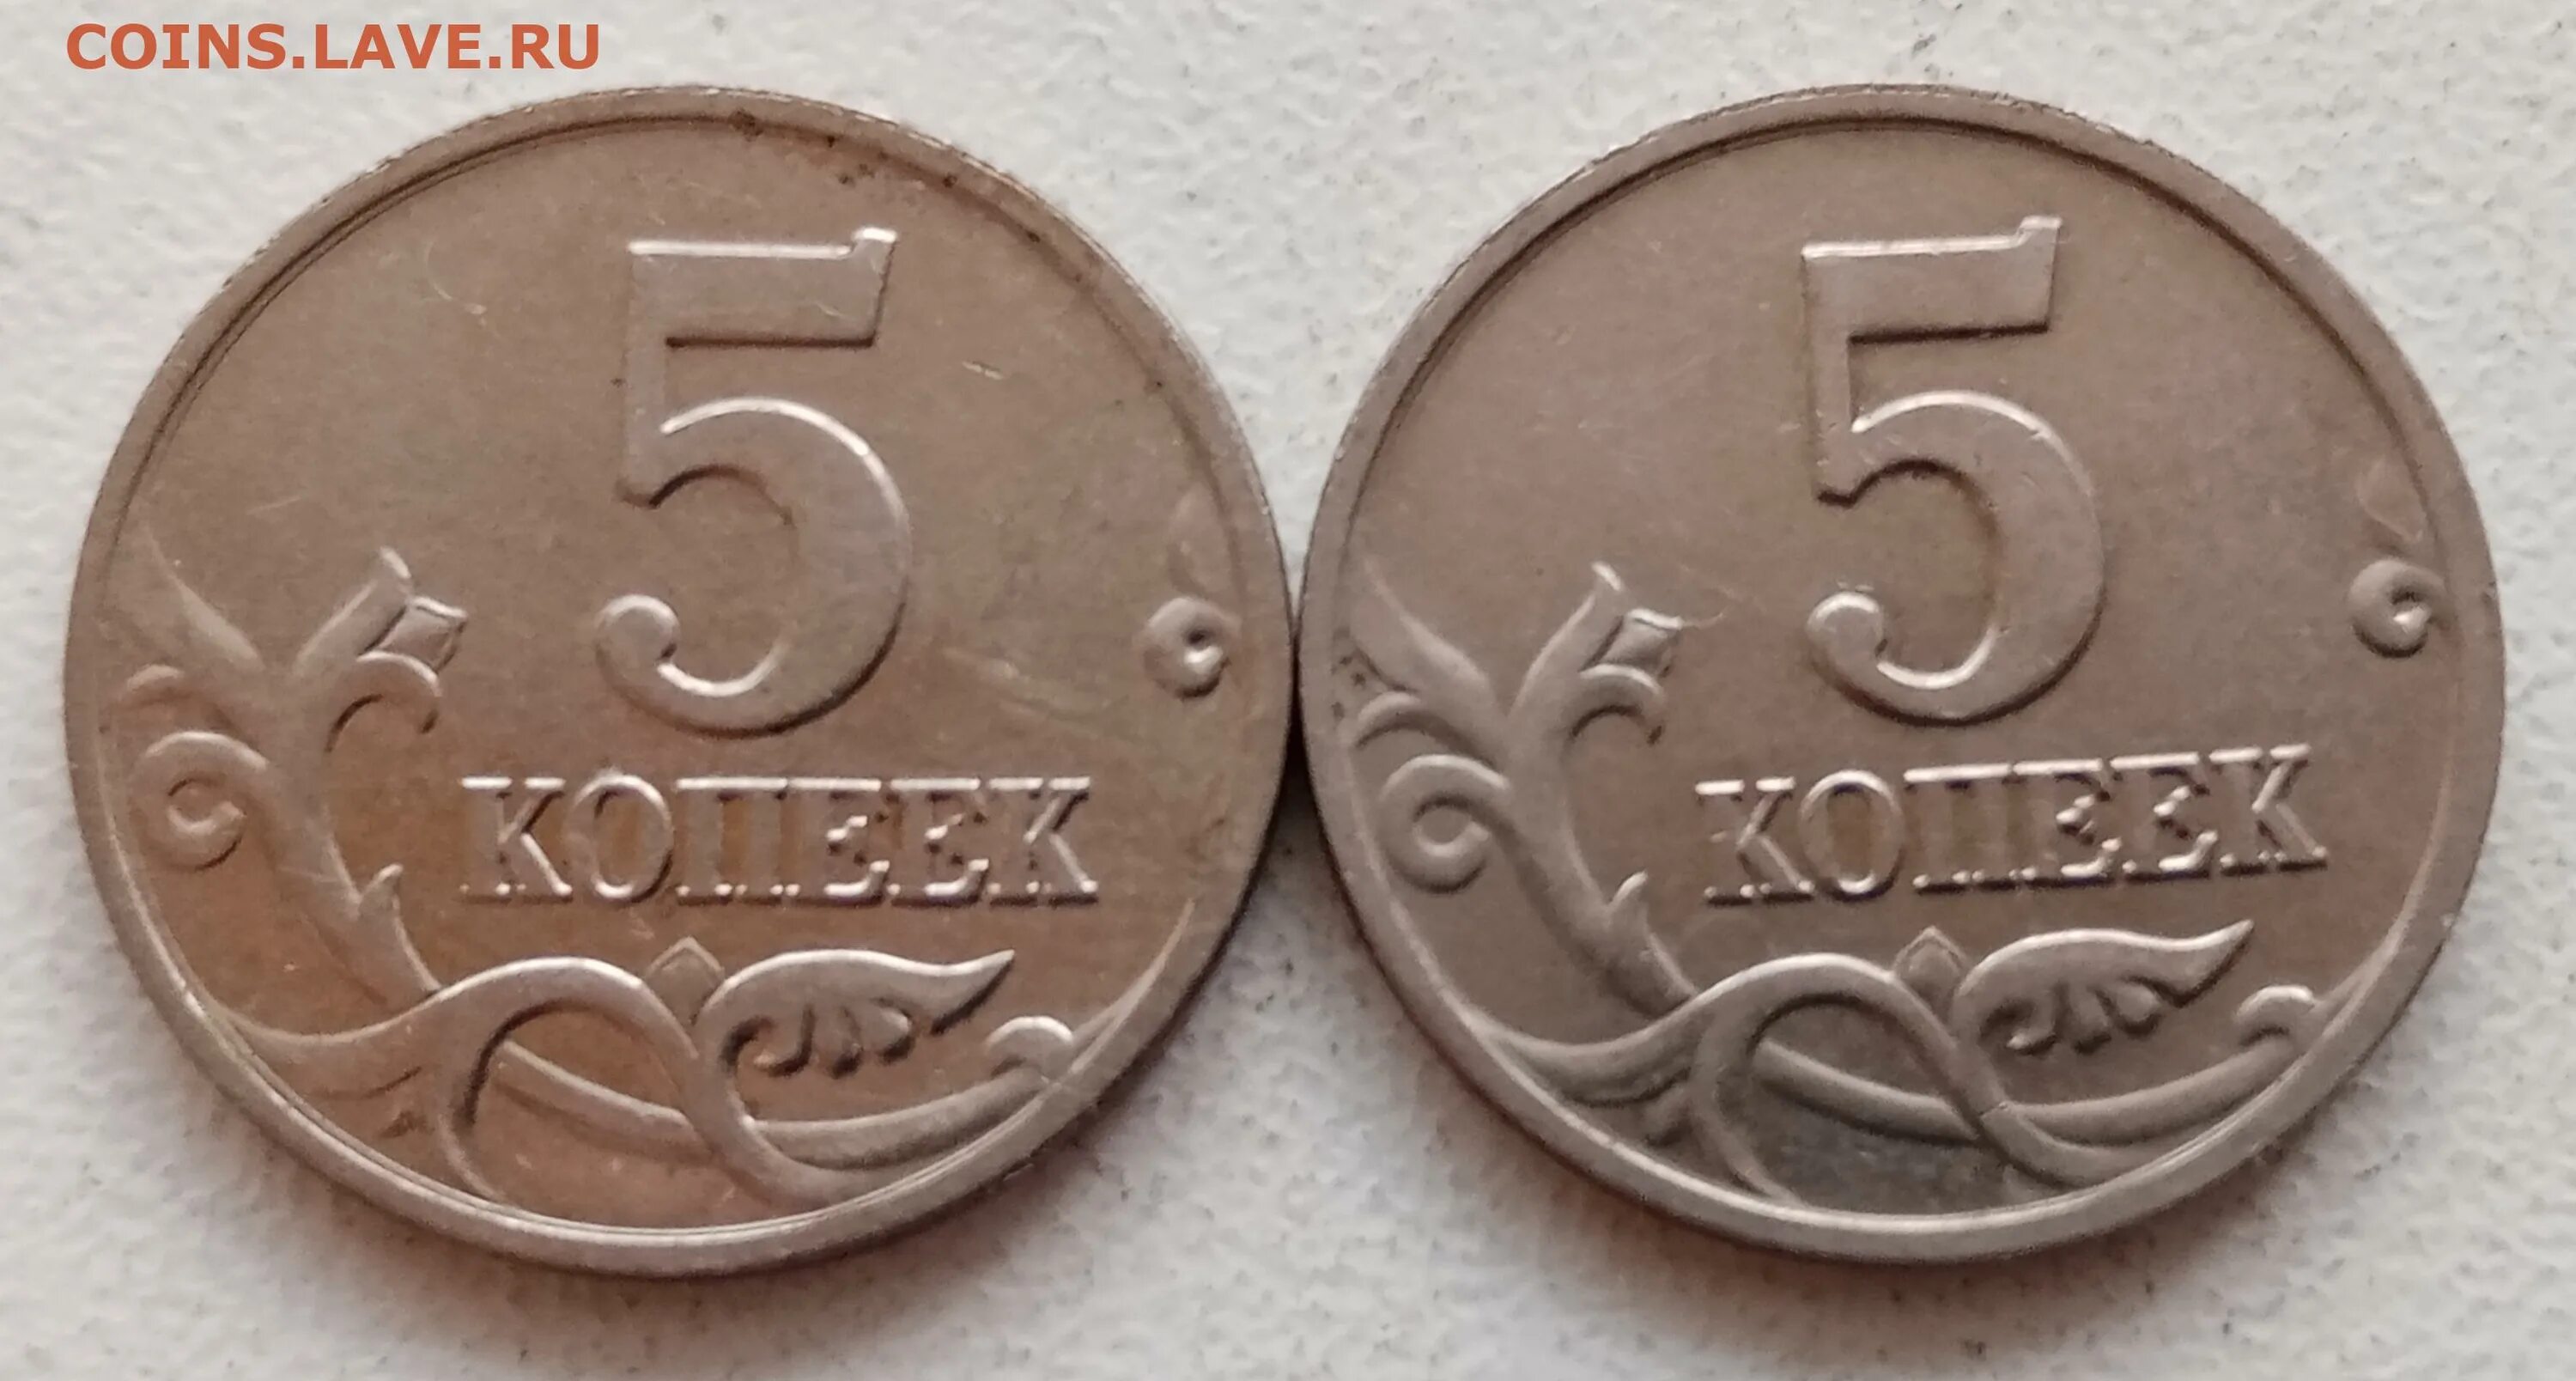 Монета 5 копеек 2002 СП. 1 Копейка 2001. Копейка 2001 года. 5 Копеек 2001 СП. Монеты 2001 года цена стоимость монеты